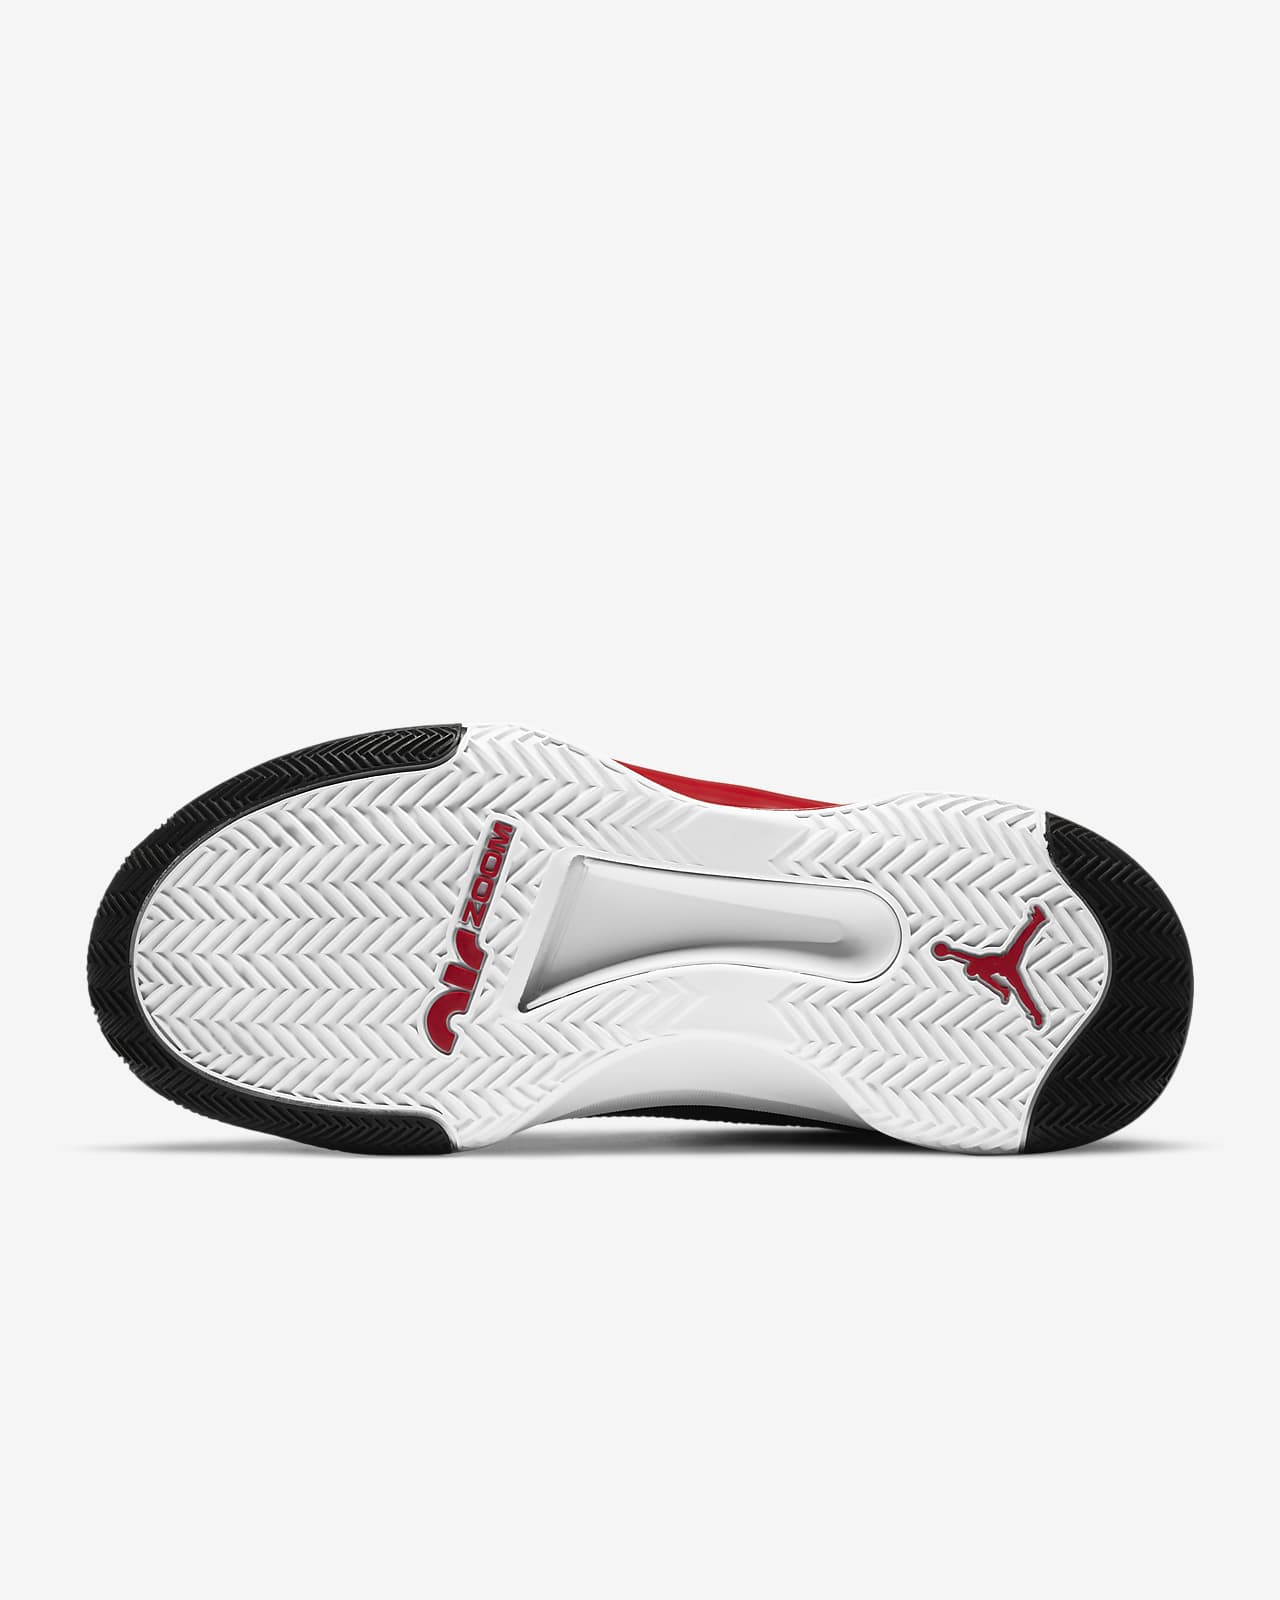 jordan shoes basketball shoes